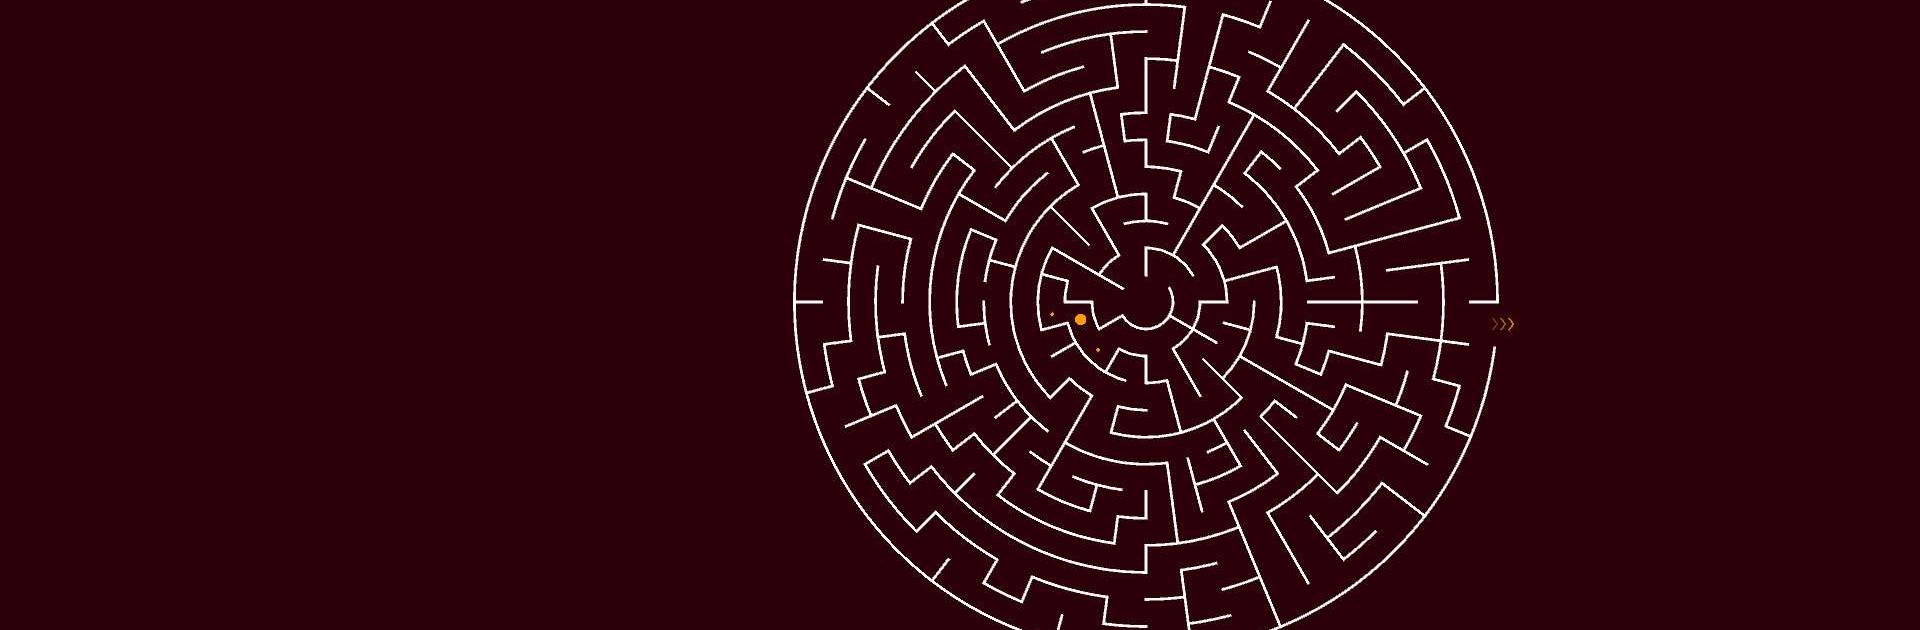 Labirintos - Maze Escape